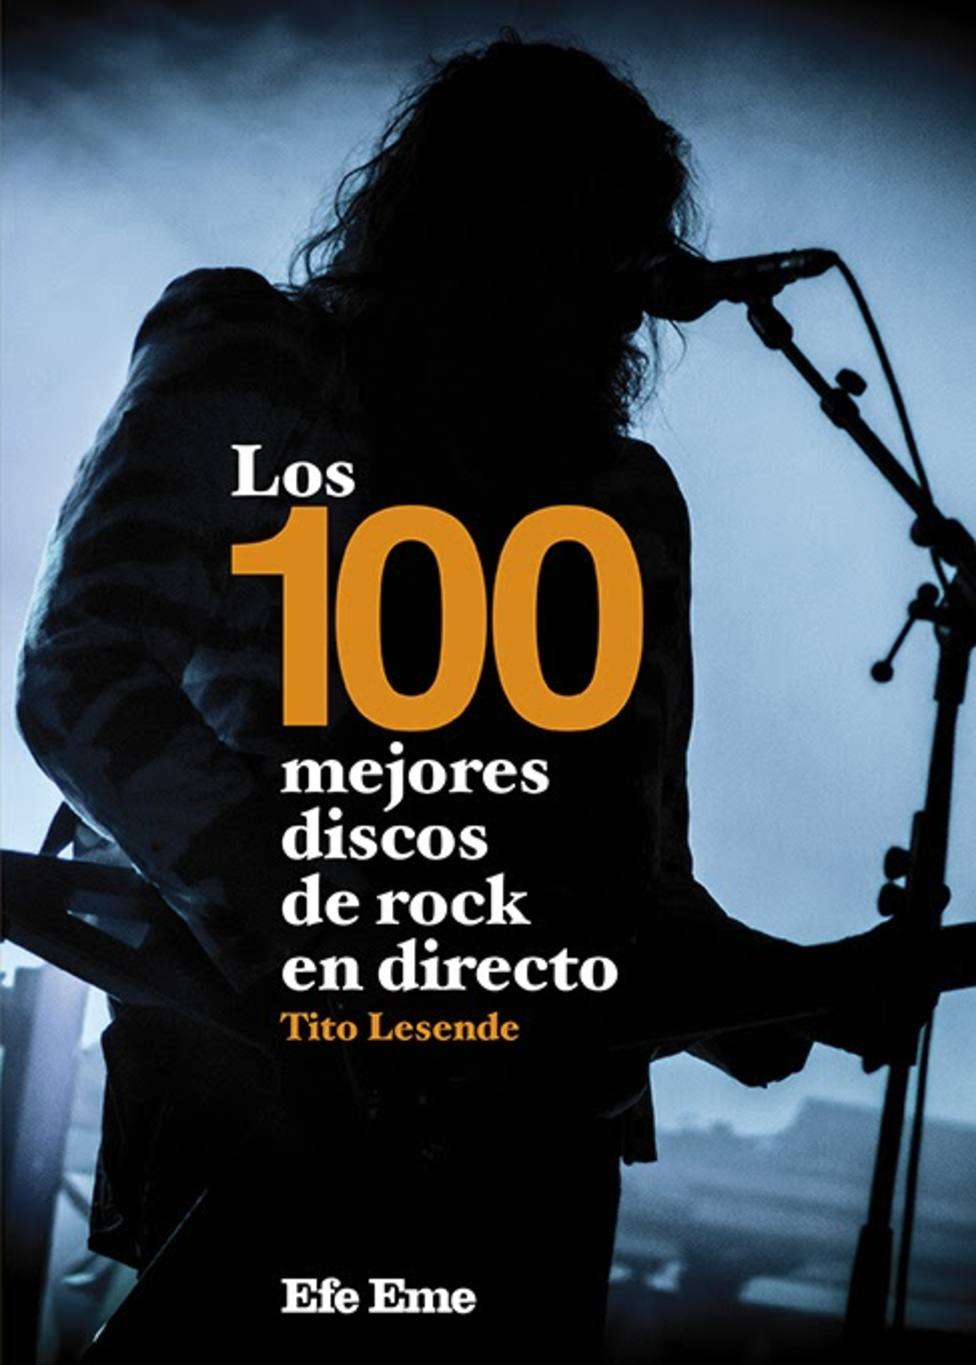 El escritor musical Tito Lesende publica Los 100 mejores discos de rock en directo